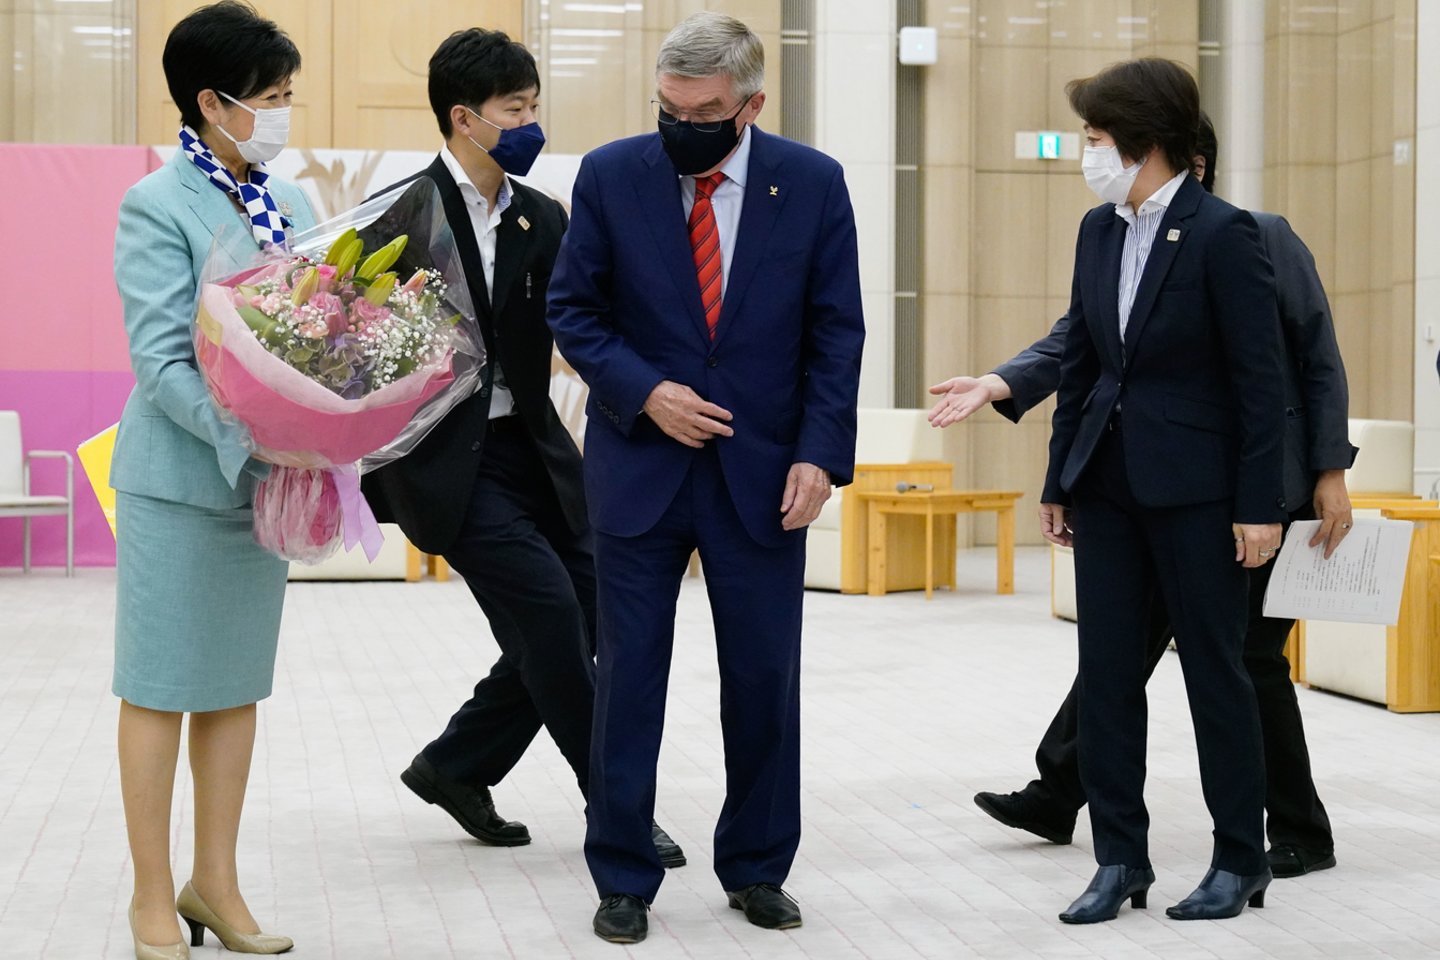 Ketvirtadienį Tokijuje vyko Tarptautinio olimpinio komiteto vadovo Thomaso Bacho susitikimas su Tokijo gubernatore Koike Yuriko. <br> zumz press/scanpix.com nuotr.